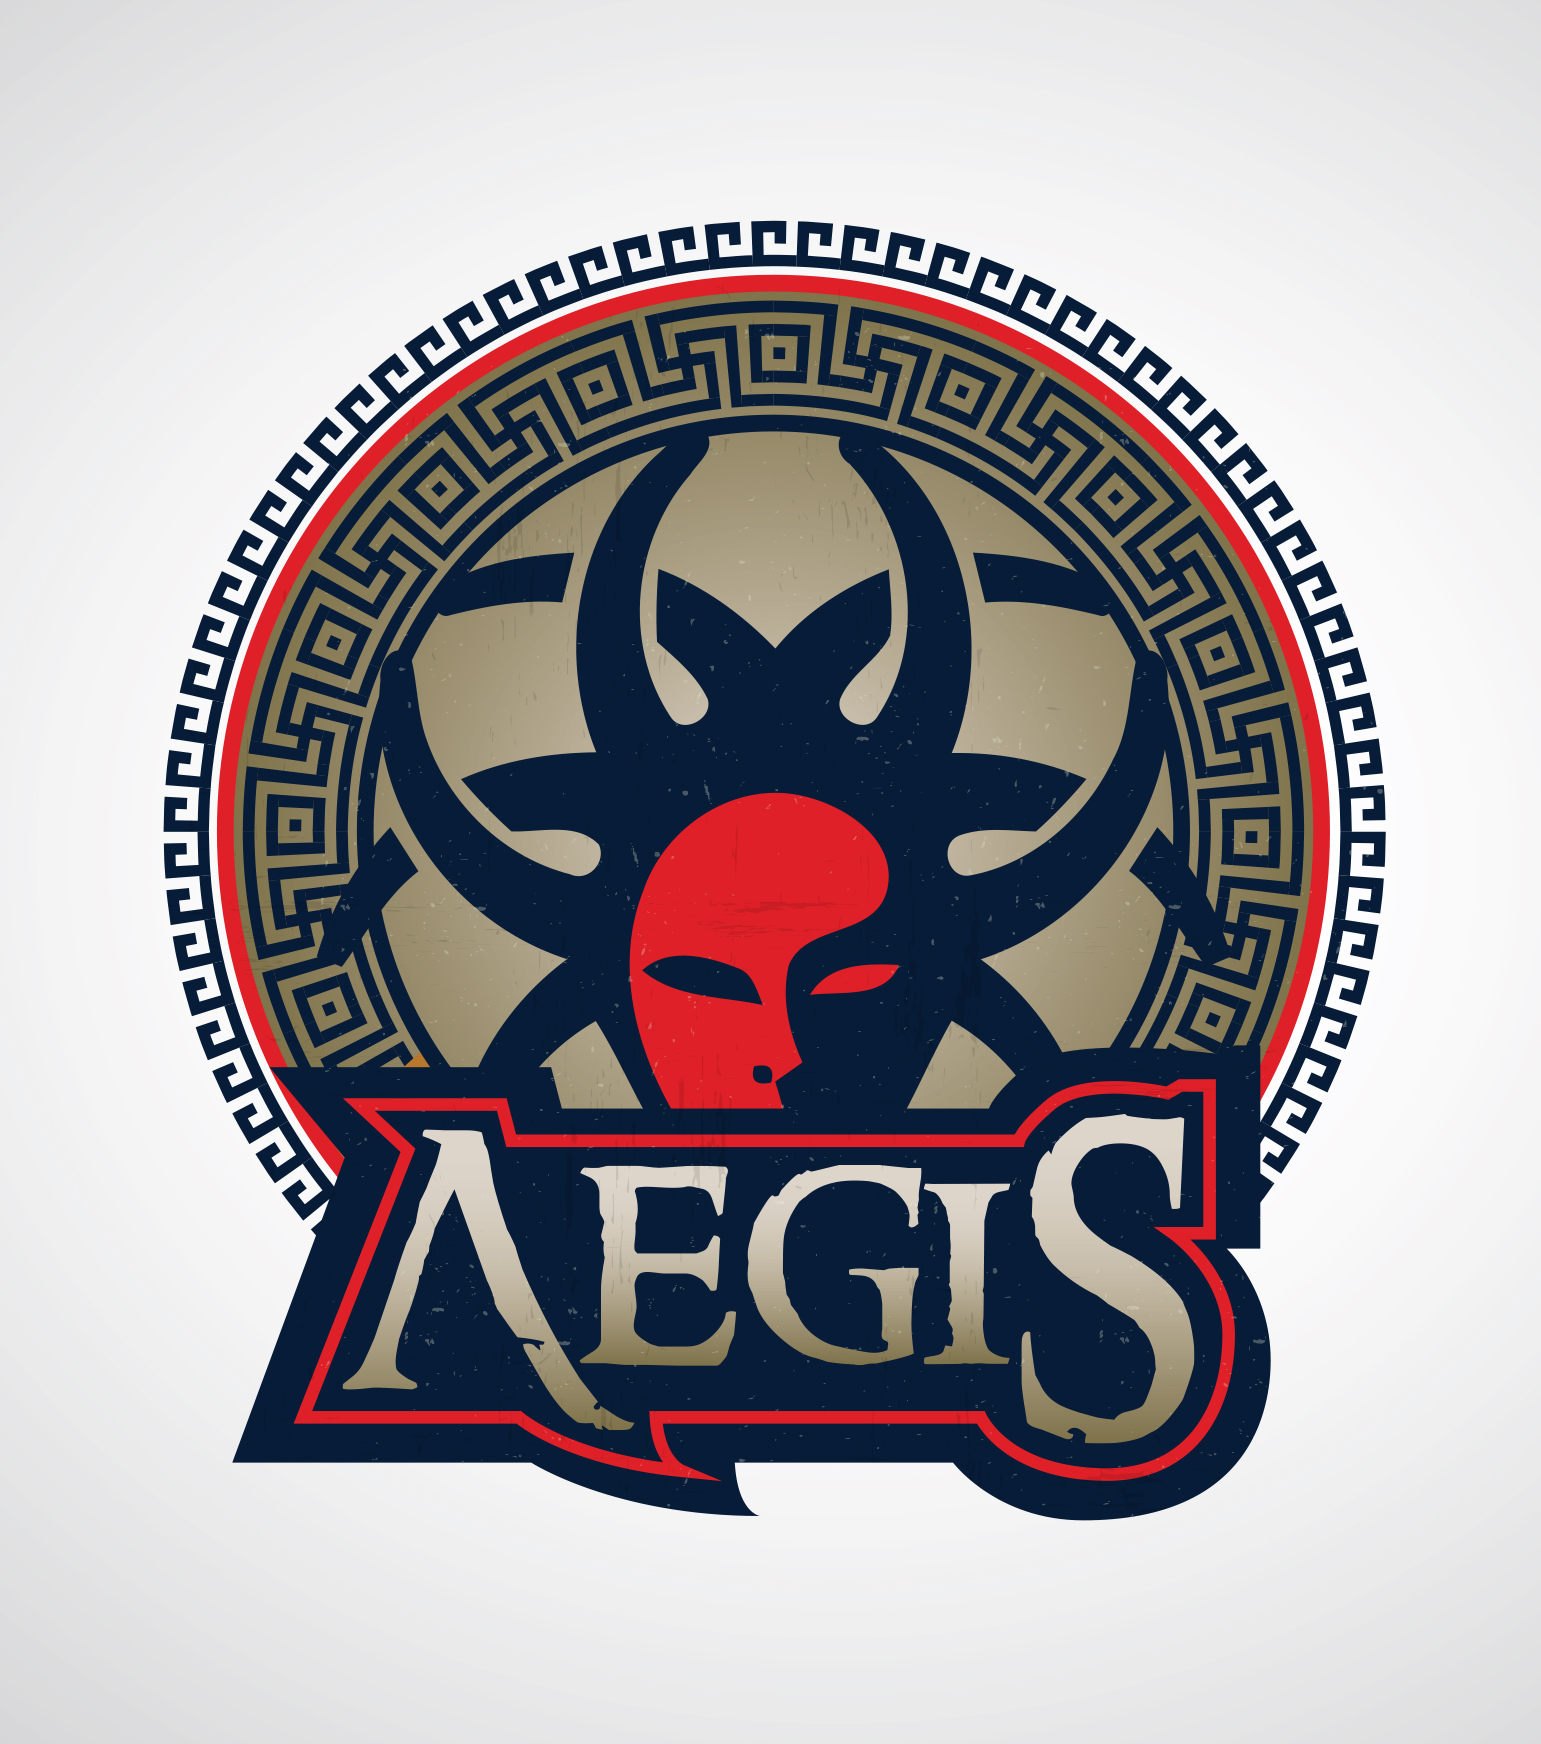 AEGIS_Logo-2.jpg (1.05 MB)